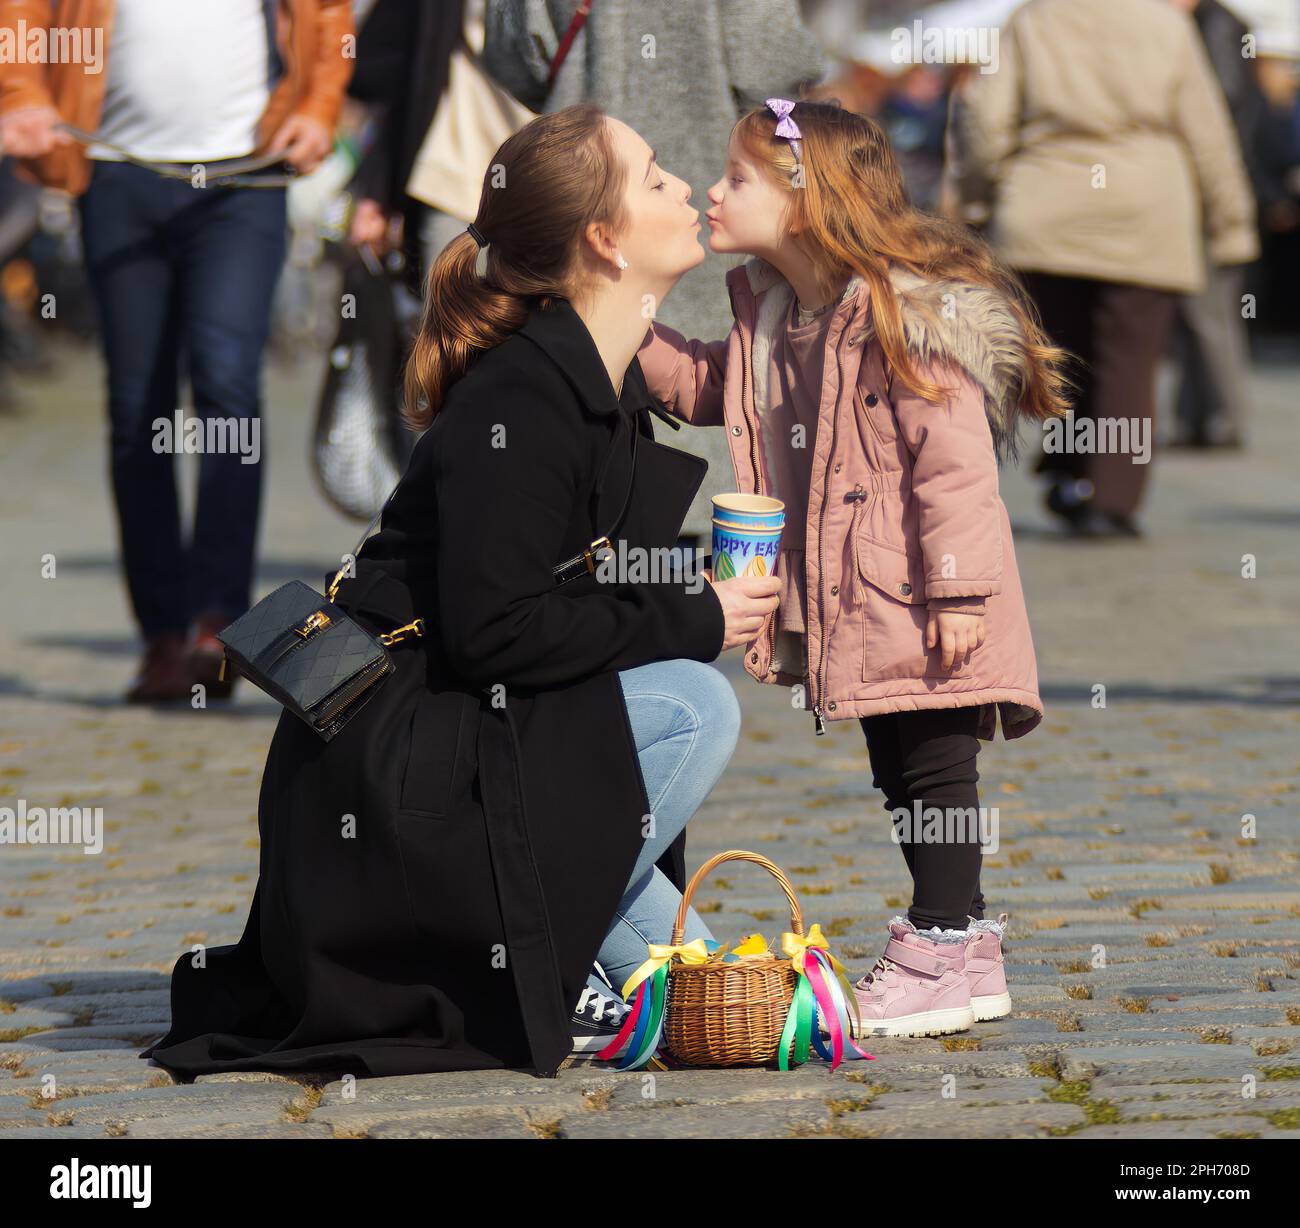 La jeune mère et sa petite fille s'embrassaient après avoir réussi leurs achats de Pâques sur le marché agricole de Prague. Banque D'Images